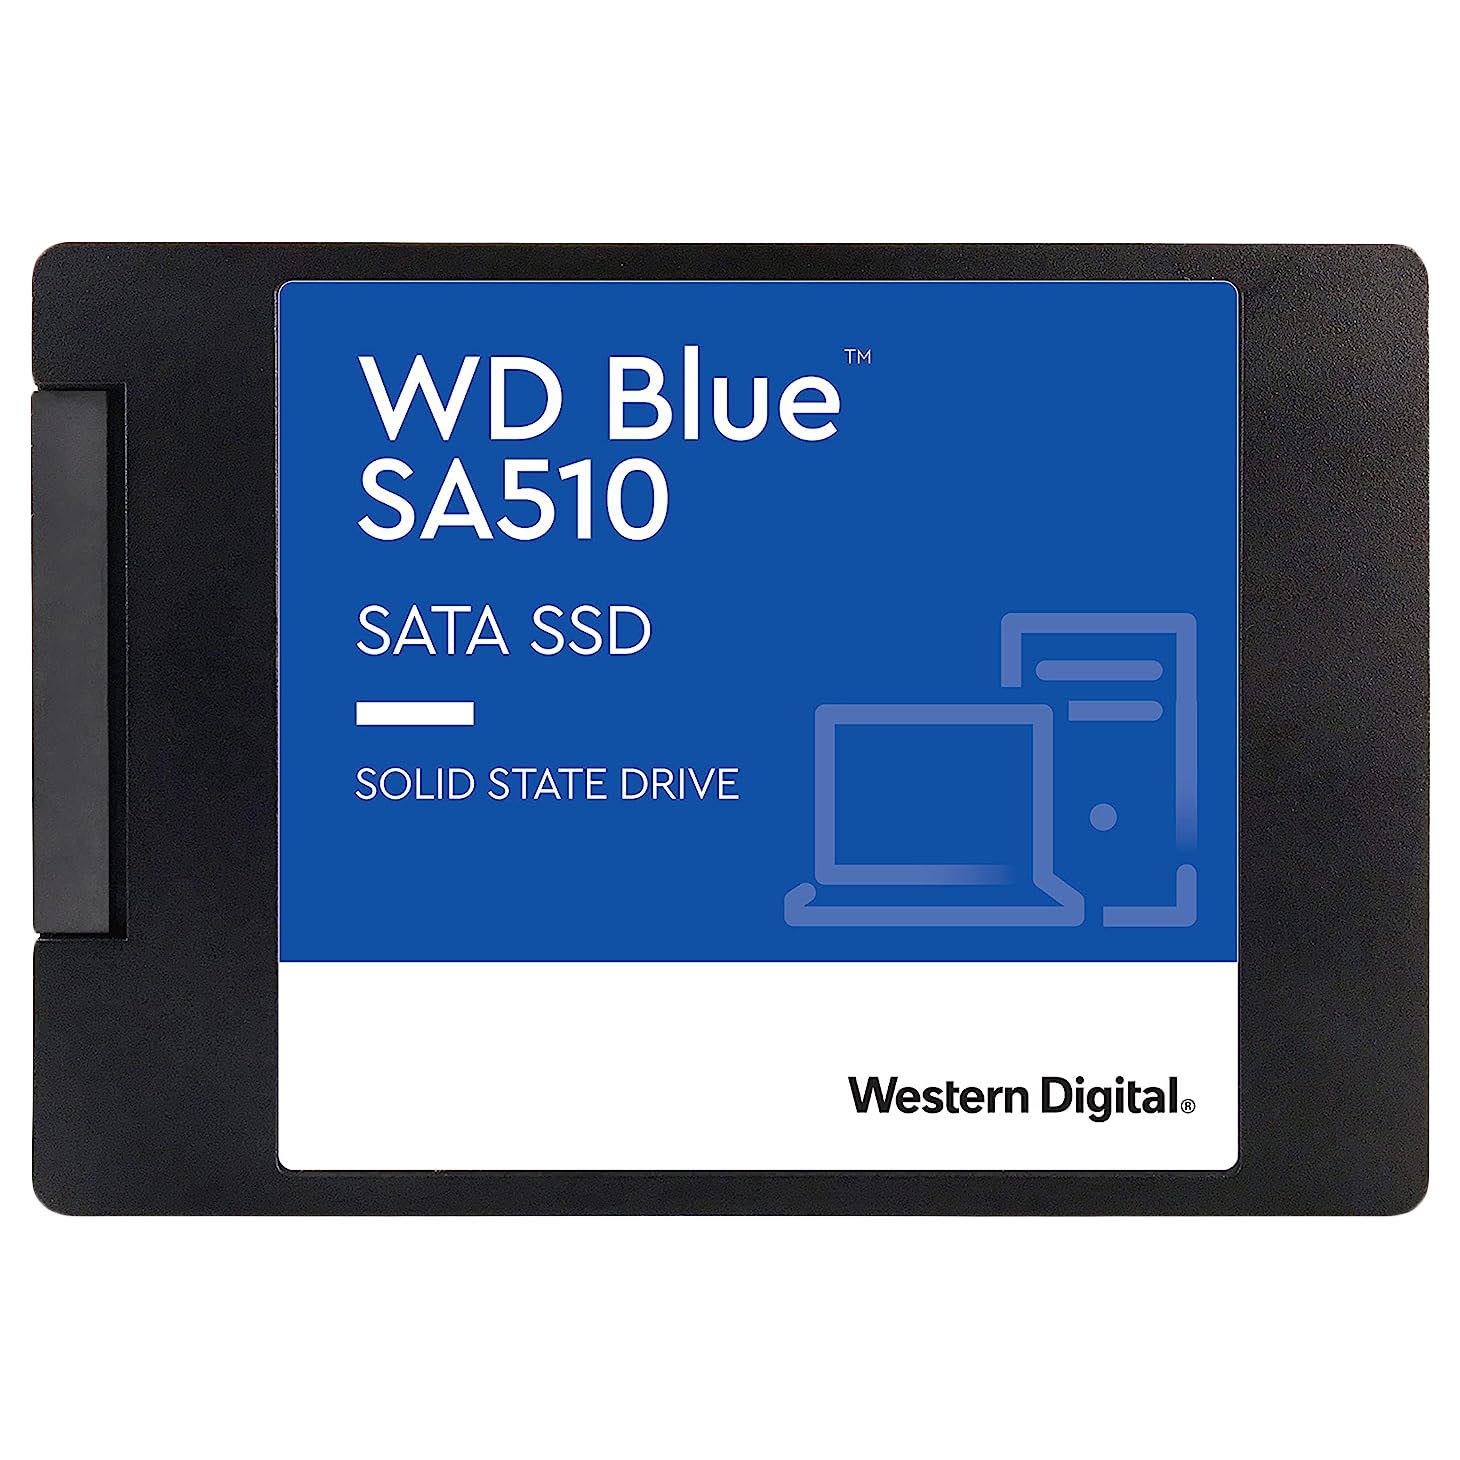 внутренний твердотельный накопитель western digital wd blue sata wds100t2b0a 1тб 2 5 Внутренний твердотельный накопитель Western Digital WD Blue SA510, WDS100T3B0A, 1Тб, 2,5